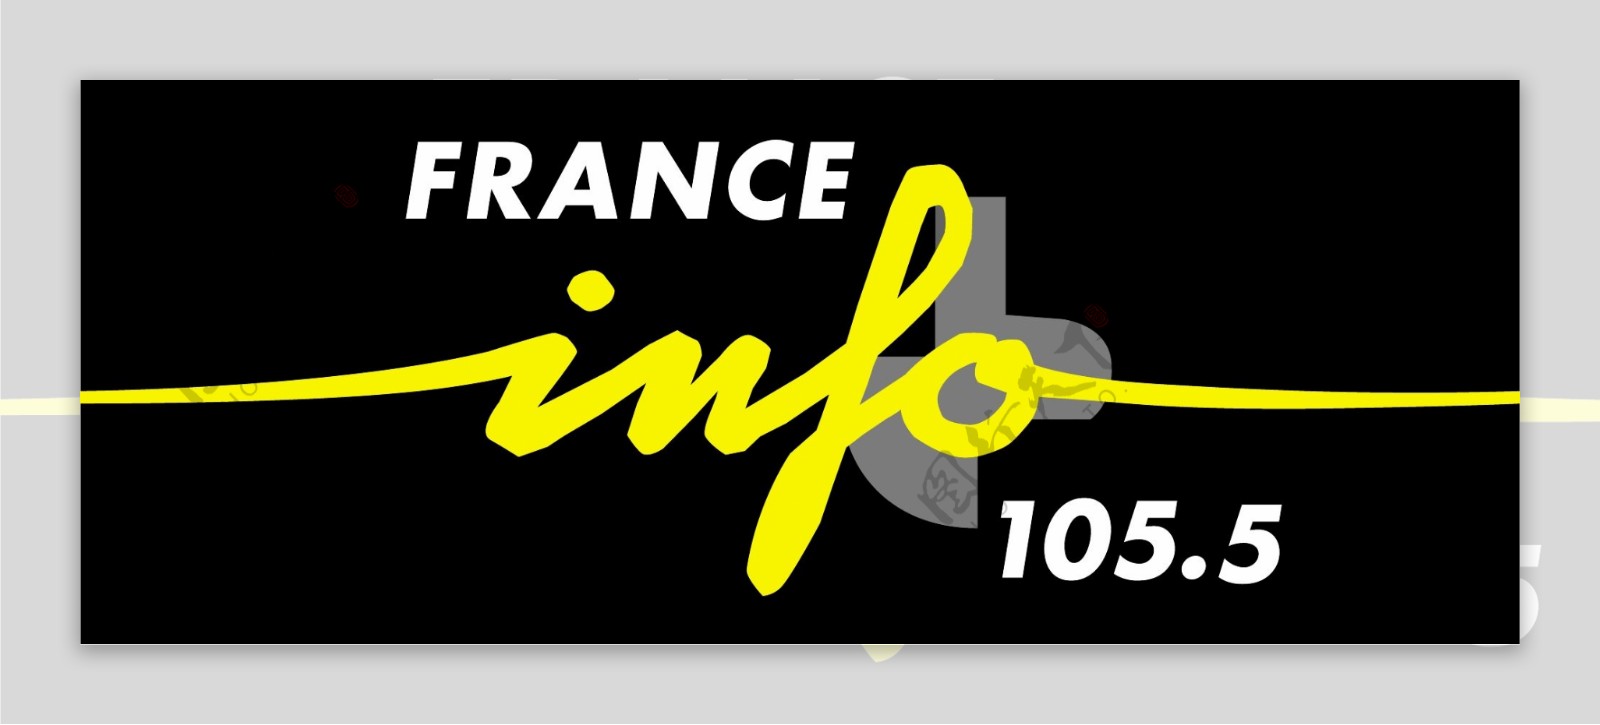 法国信息广播电台的标志